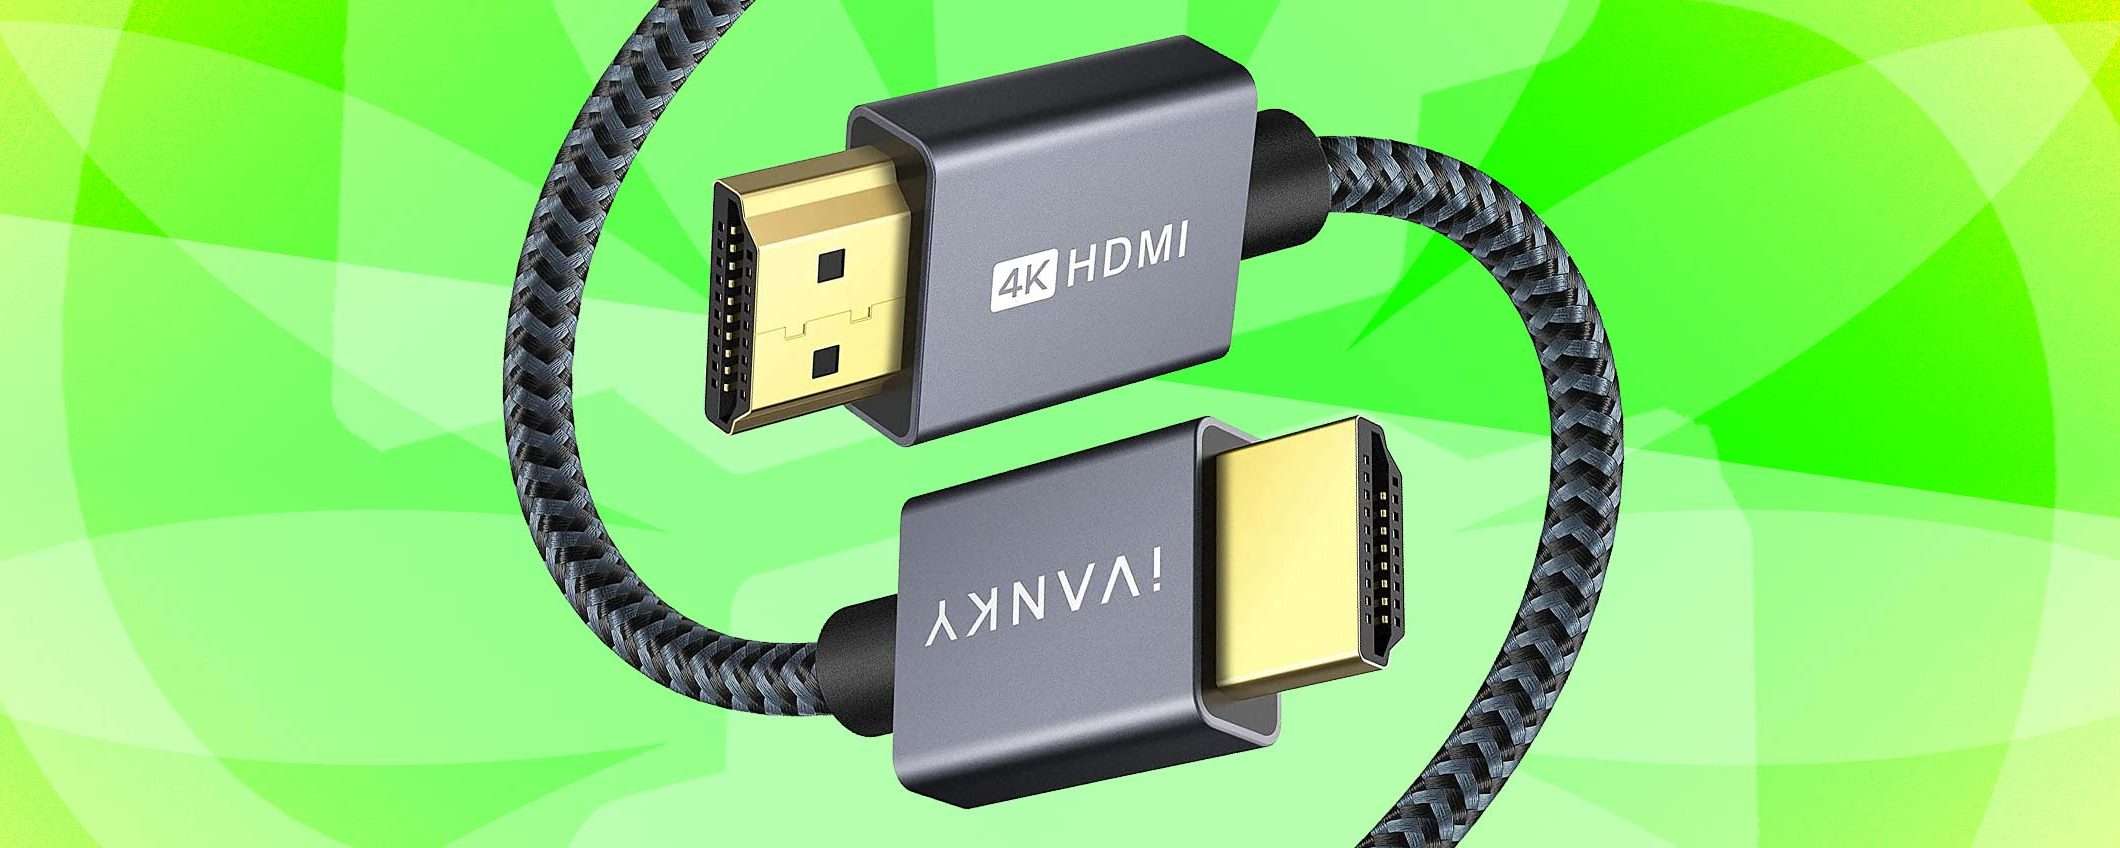 Cavo HDMI 4K (2m) di alta qualità a POCHI EURO